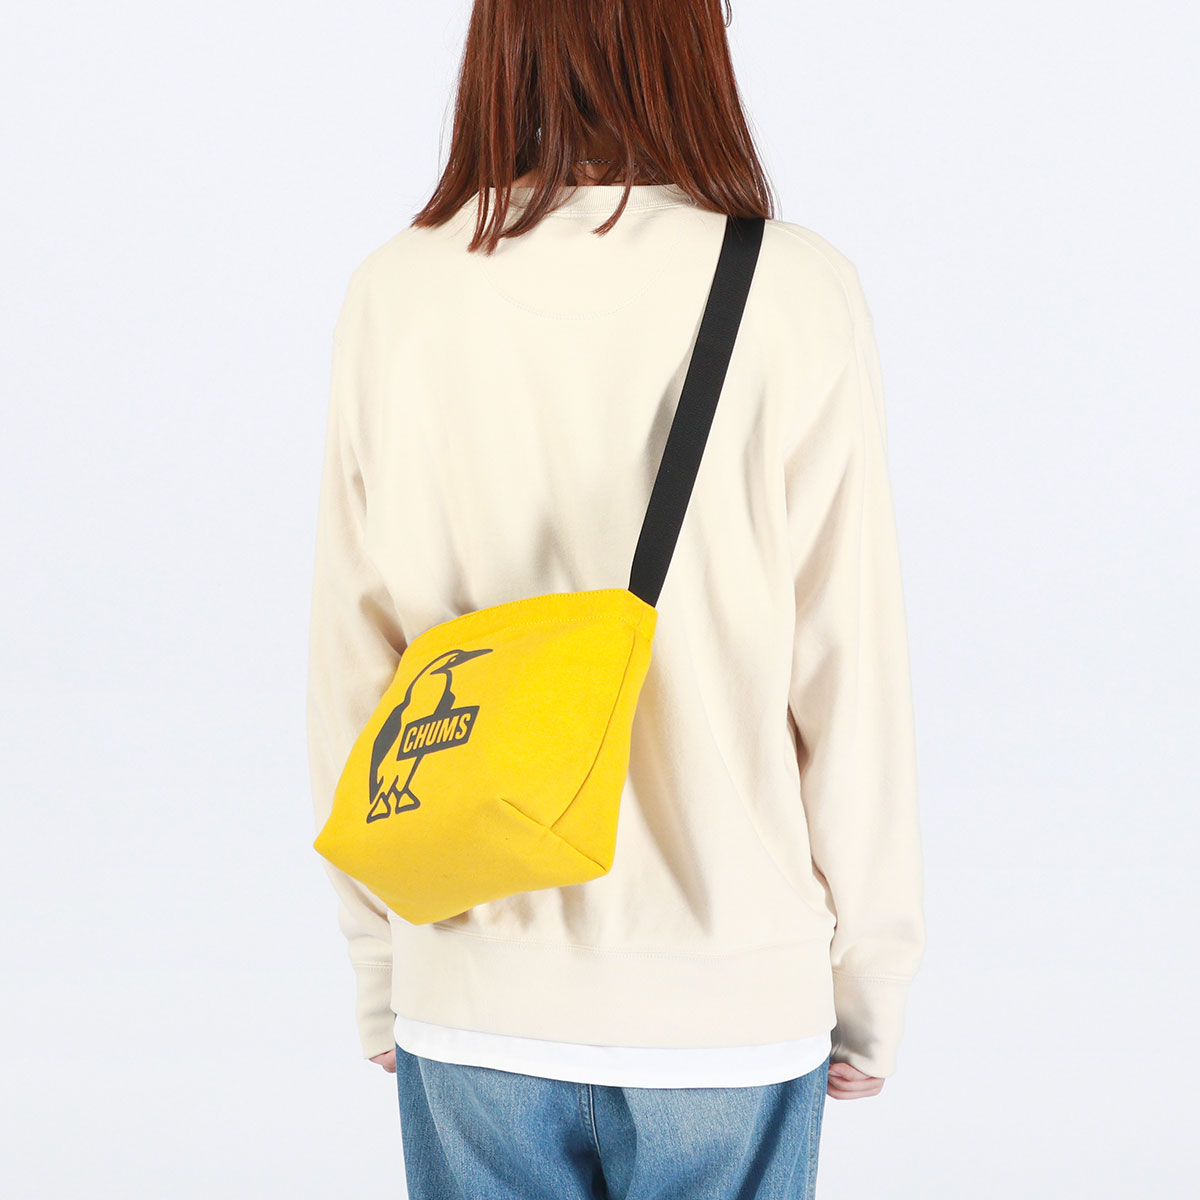  максимальный 41%*5/29 ограничение Япония стандартный товар Chums сумка на плечо мужской женский CHUMS сумка маленький A5 легкий b- Be принт плечо тренировочный CH60-3743